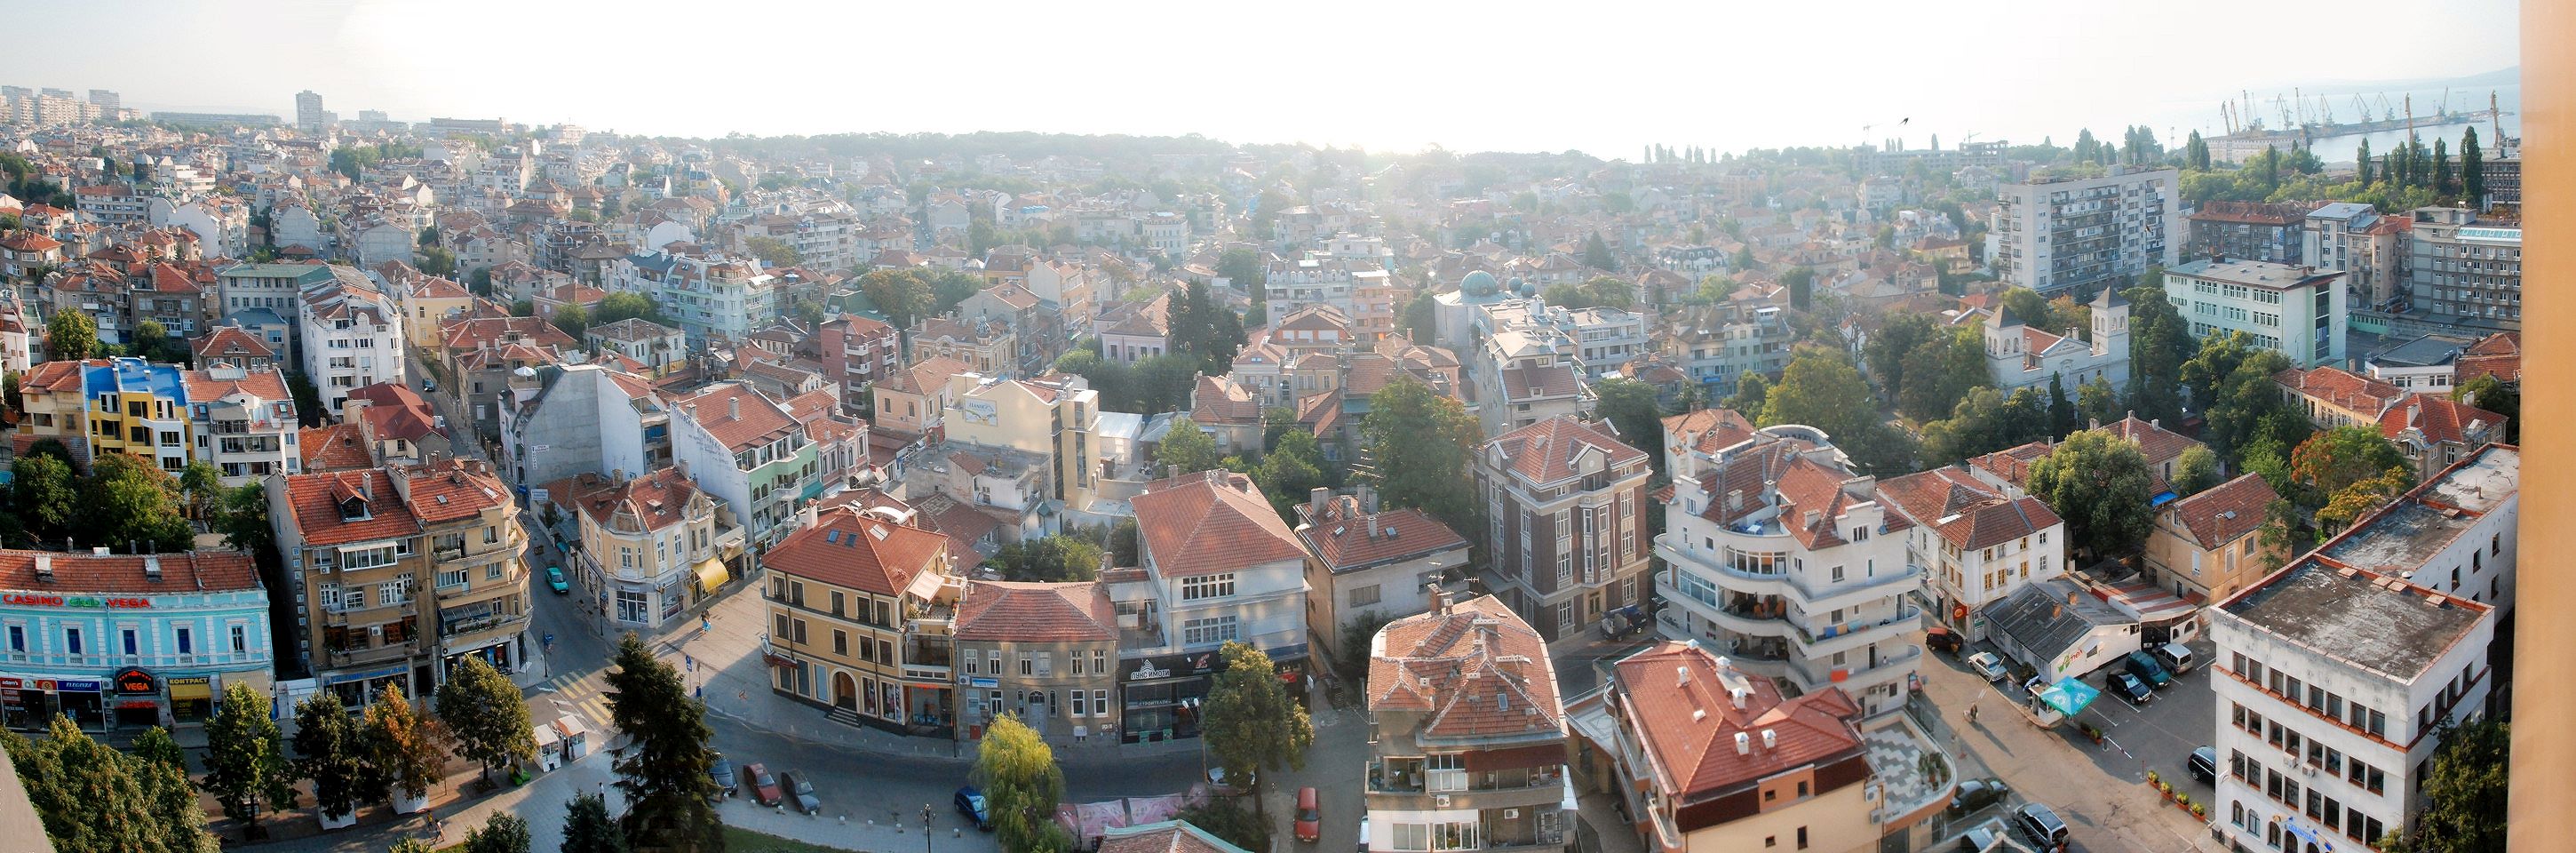 Burgas, Blick aus dem Hotel über die Stadt zum Meer